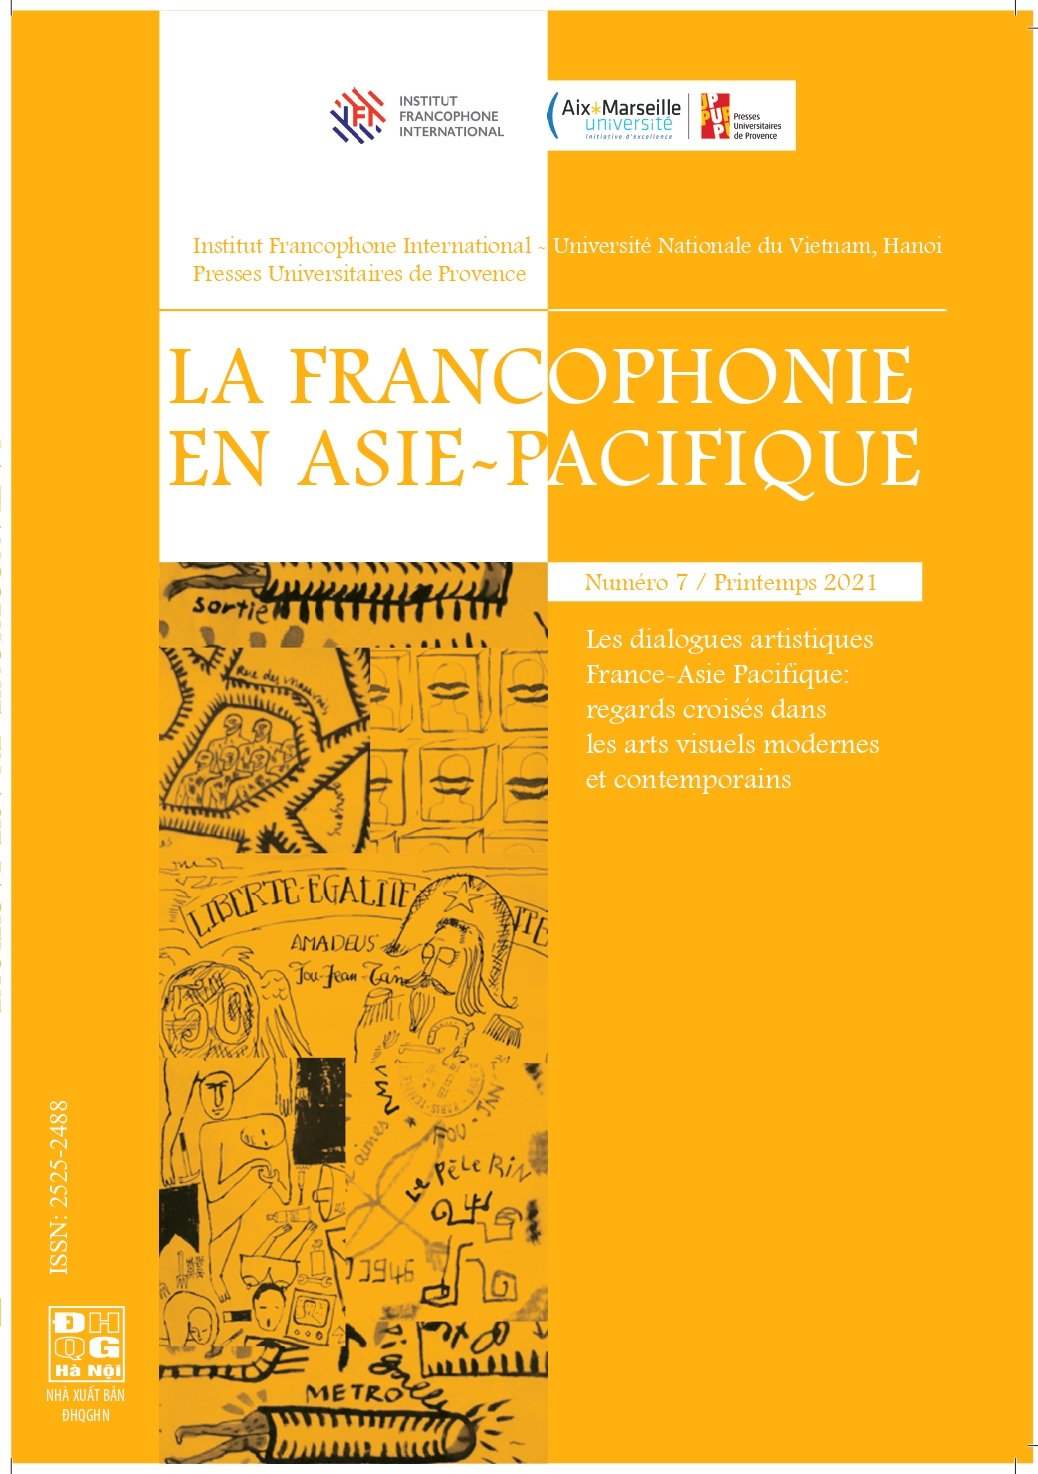 No7 - 2022 : Les dialogues artistiques France-Asie Pacifique : regards croisés dans les arts visuels modernes et contemporains